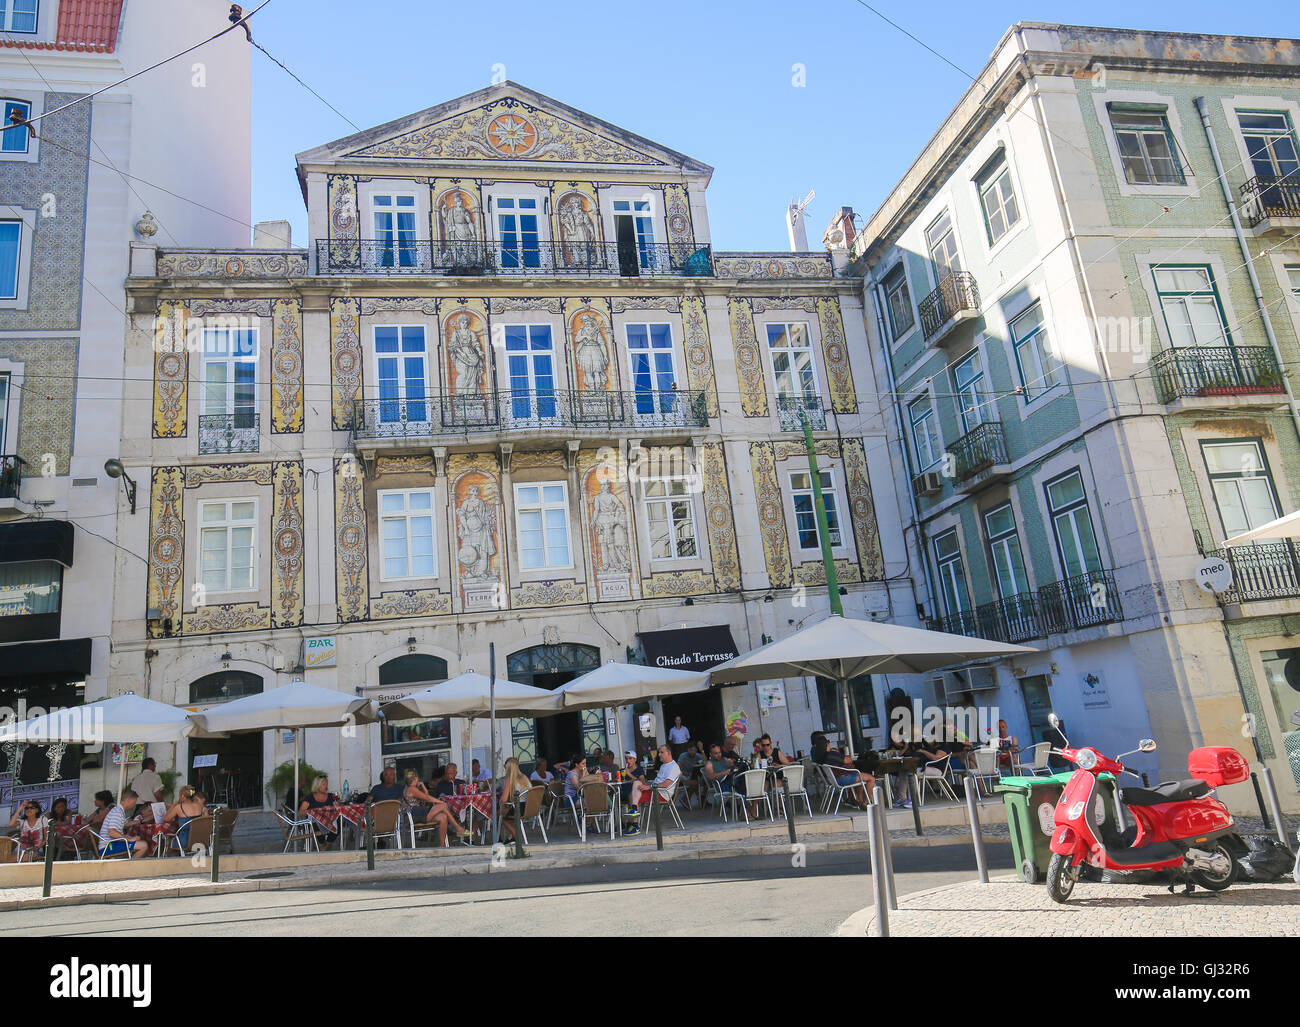 Lisbona, Portogallo - 13 luglio 2016: architettura tipica e un bar nel Bairro Alto, un quartiere centrale di Lisbona, Portogallo Foto Stock